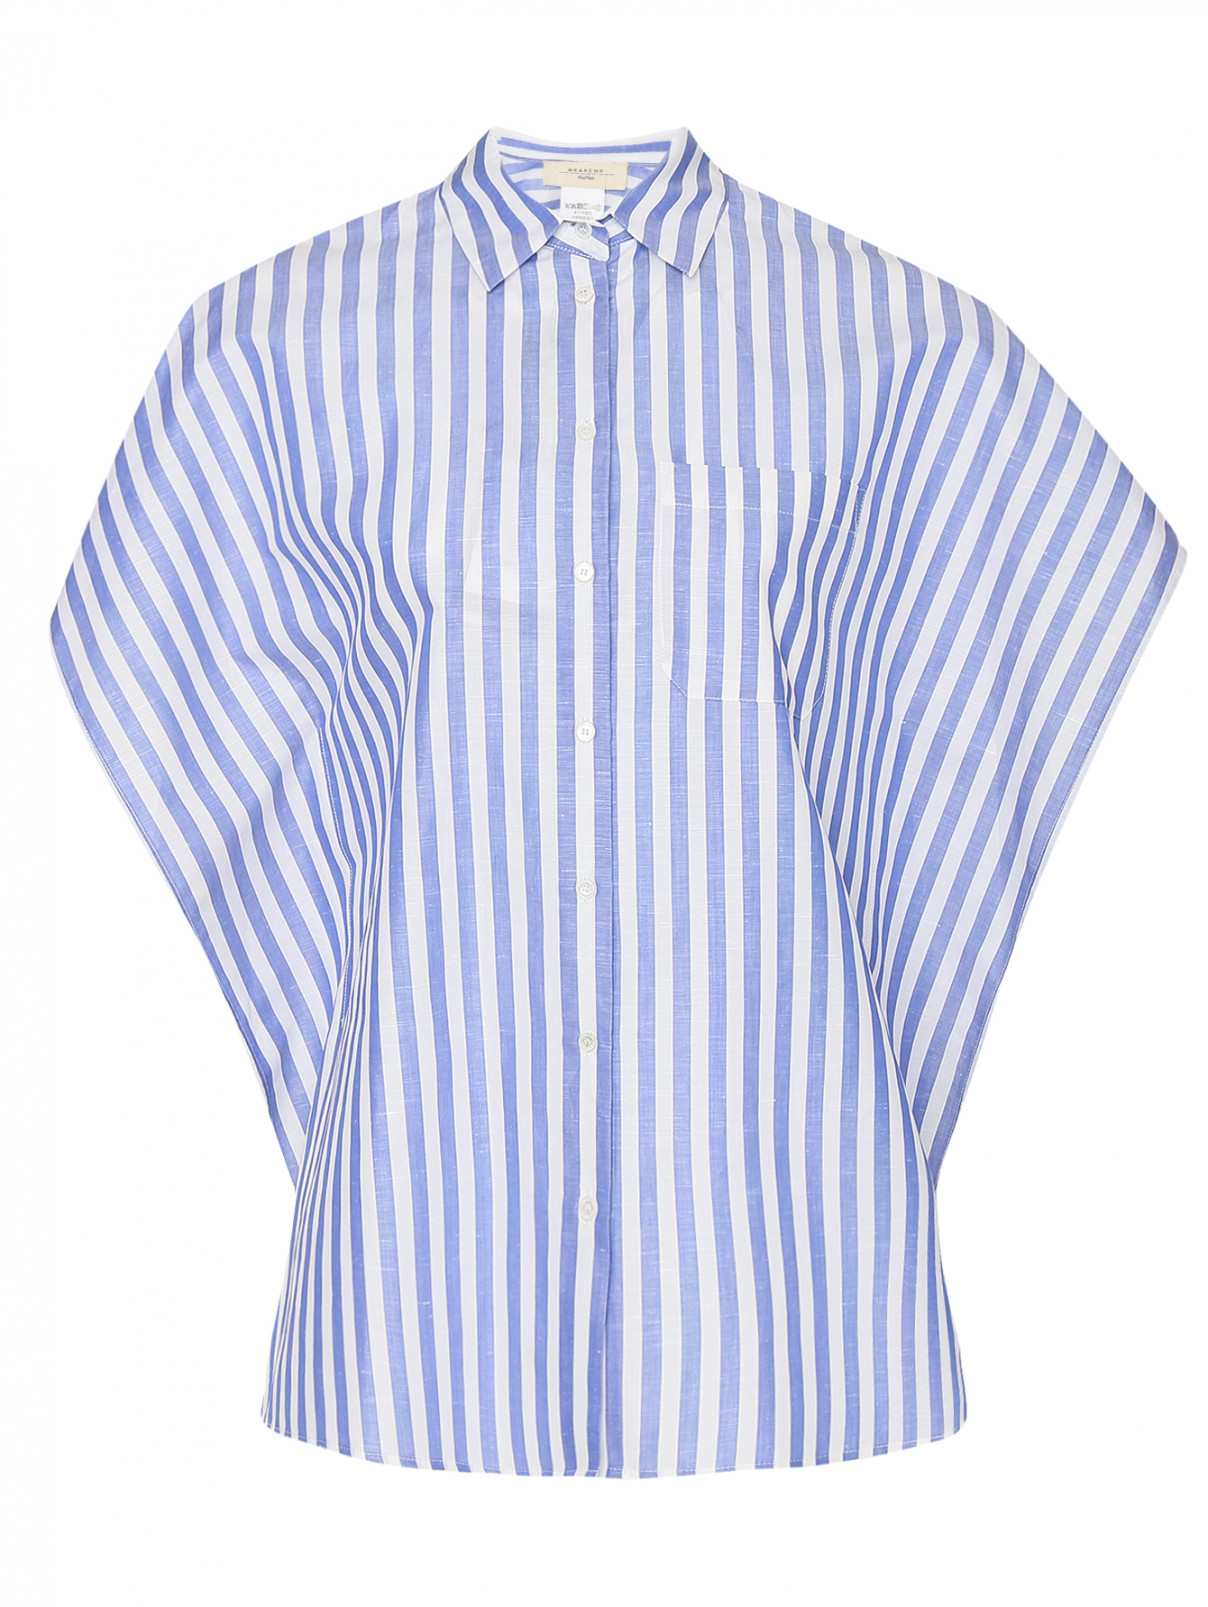 Блуза из хлопка и льна с узором полоска Weekend Max Mara  –  Общий вид  – Цвет:  Узор